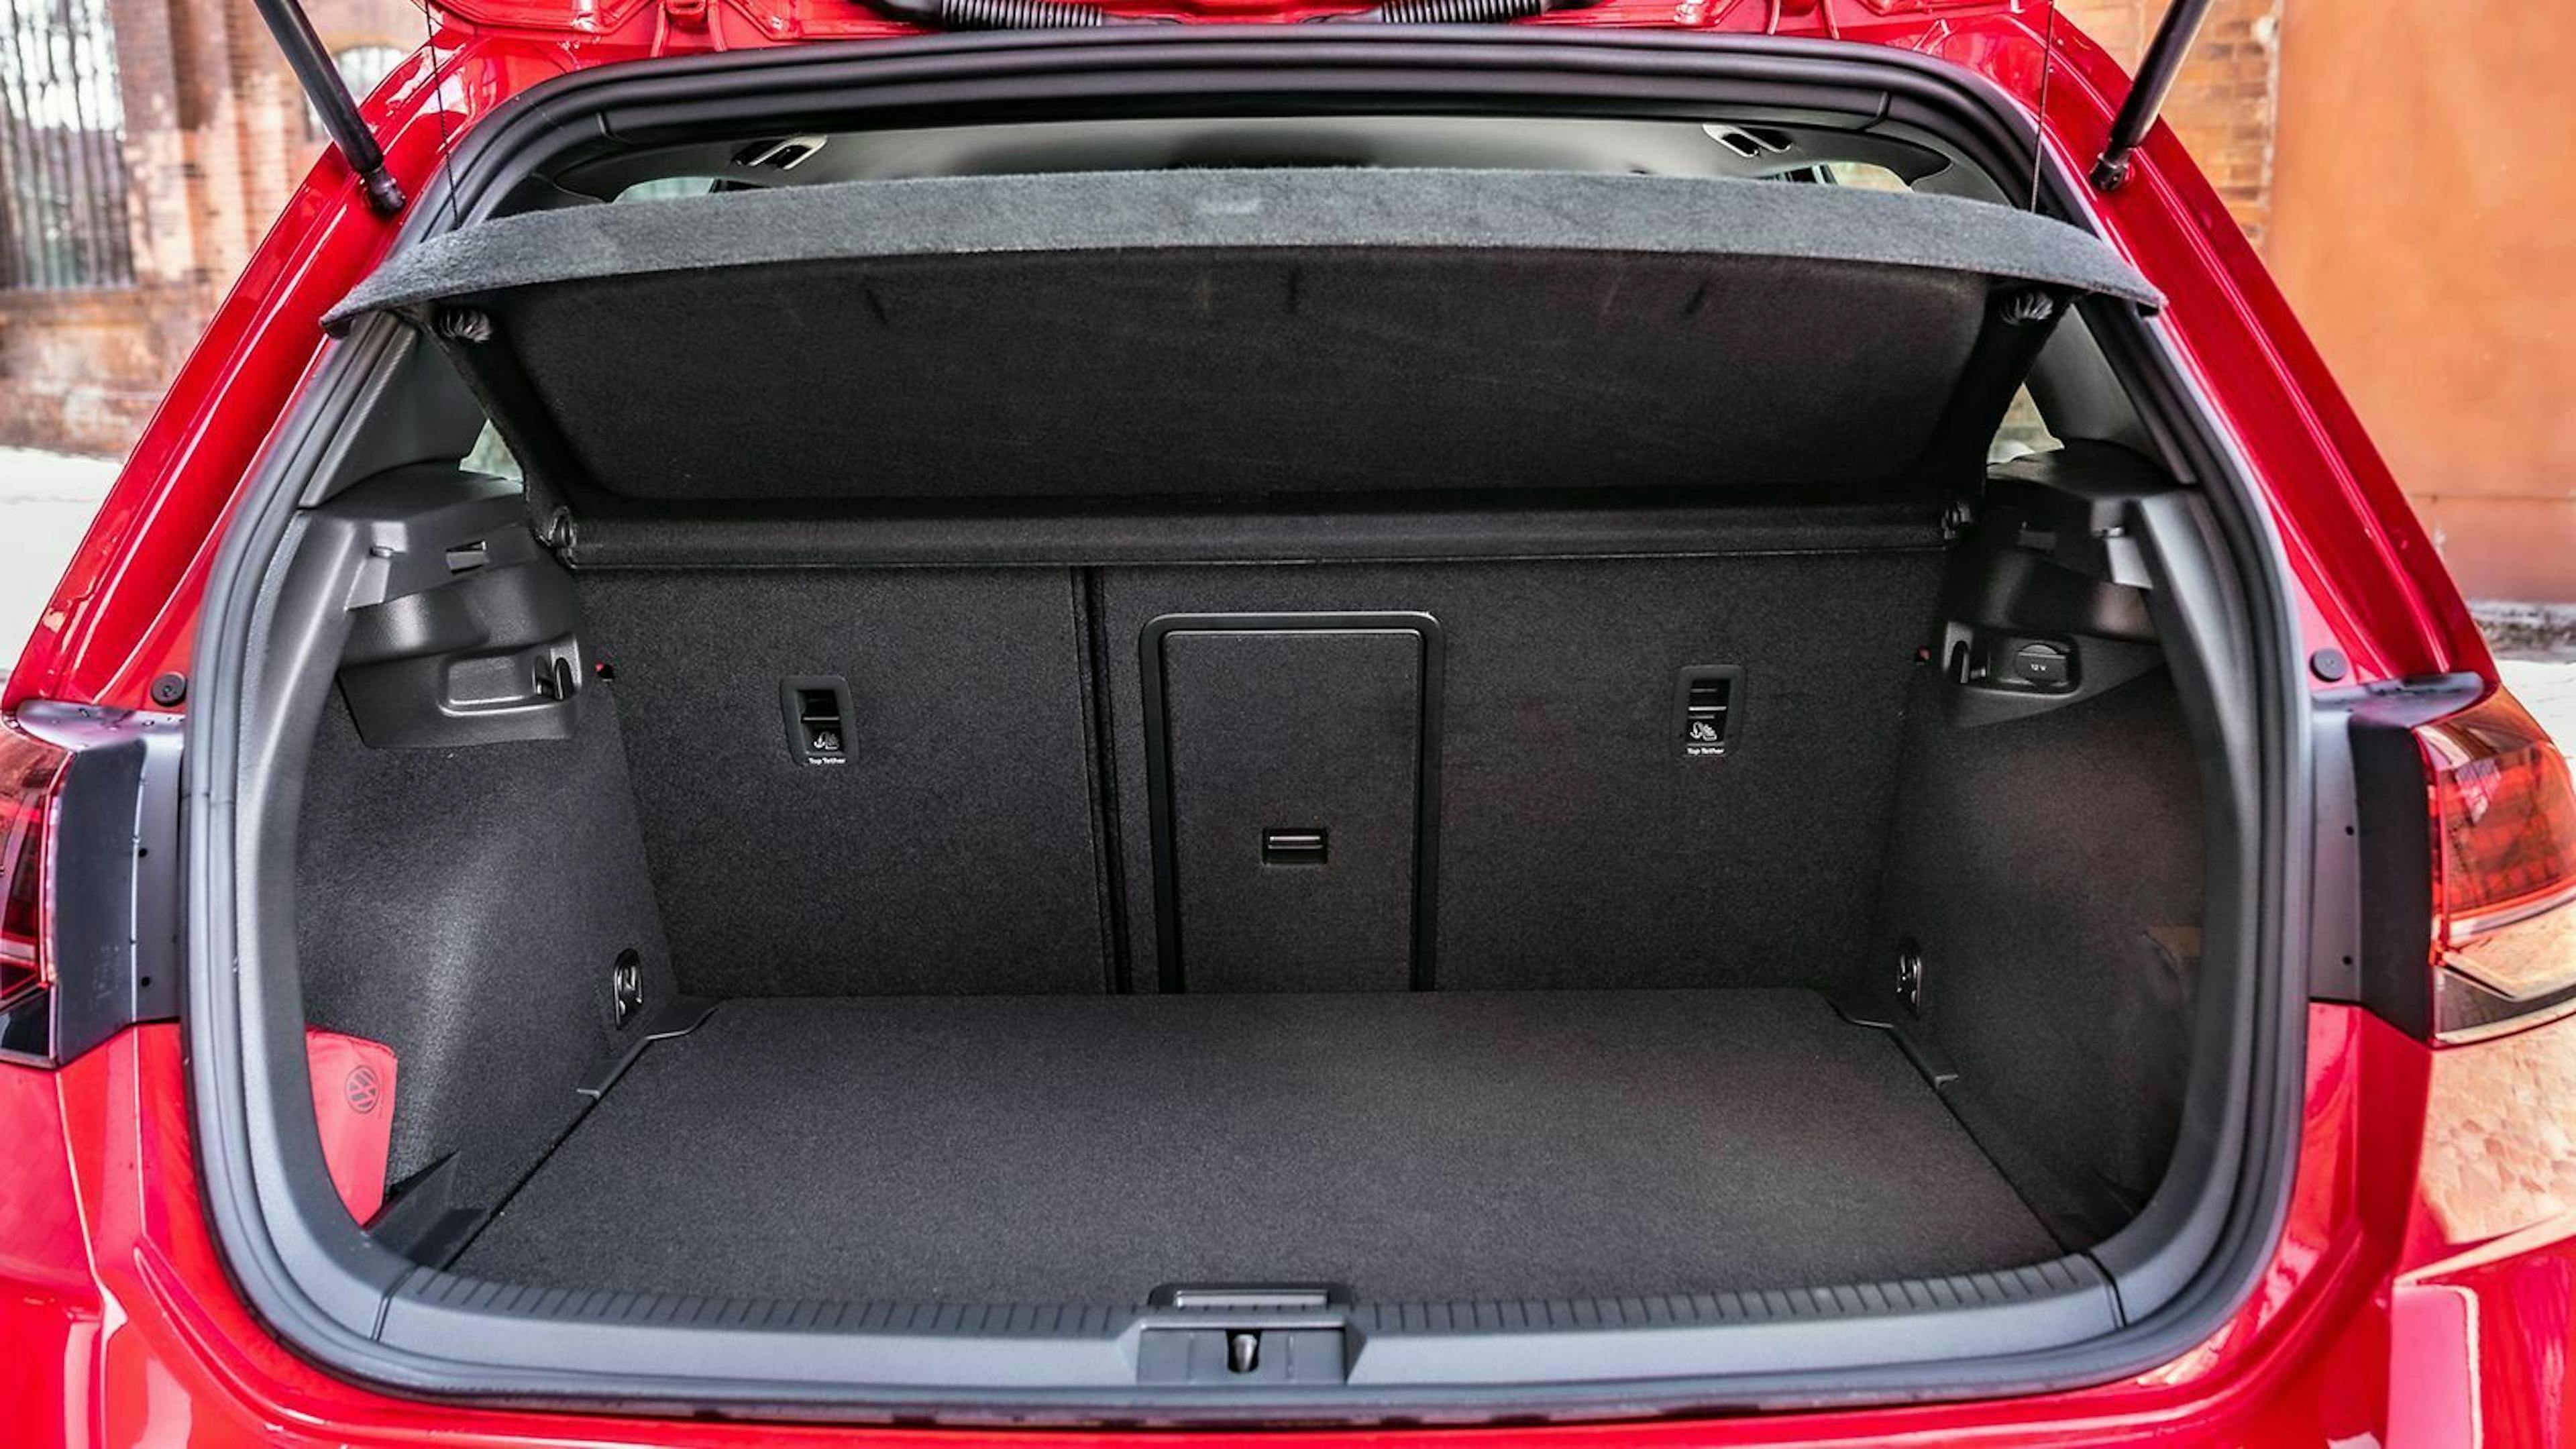 Zu sehen ist der Kofferraum des VW Golf 7 GTI TCR